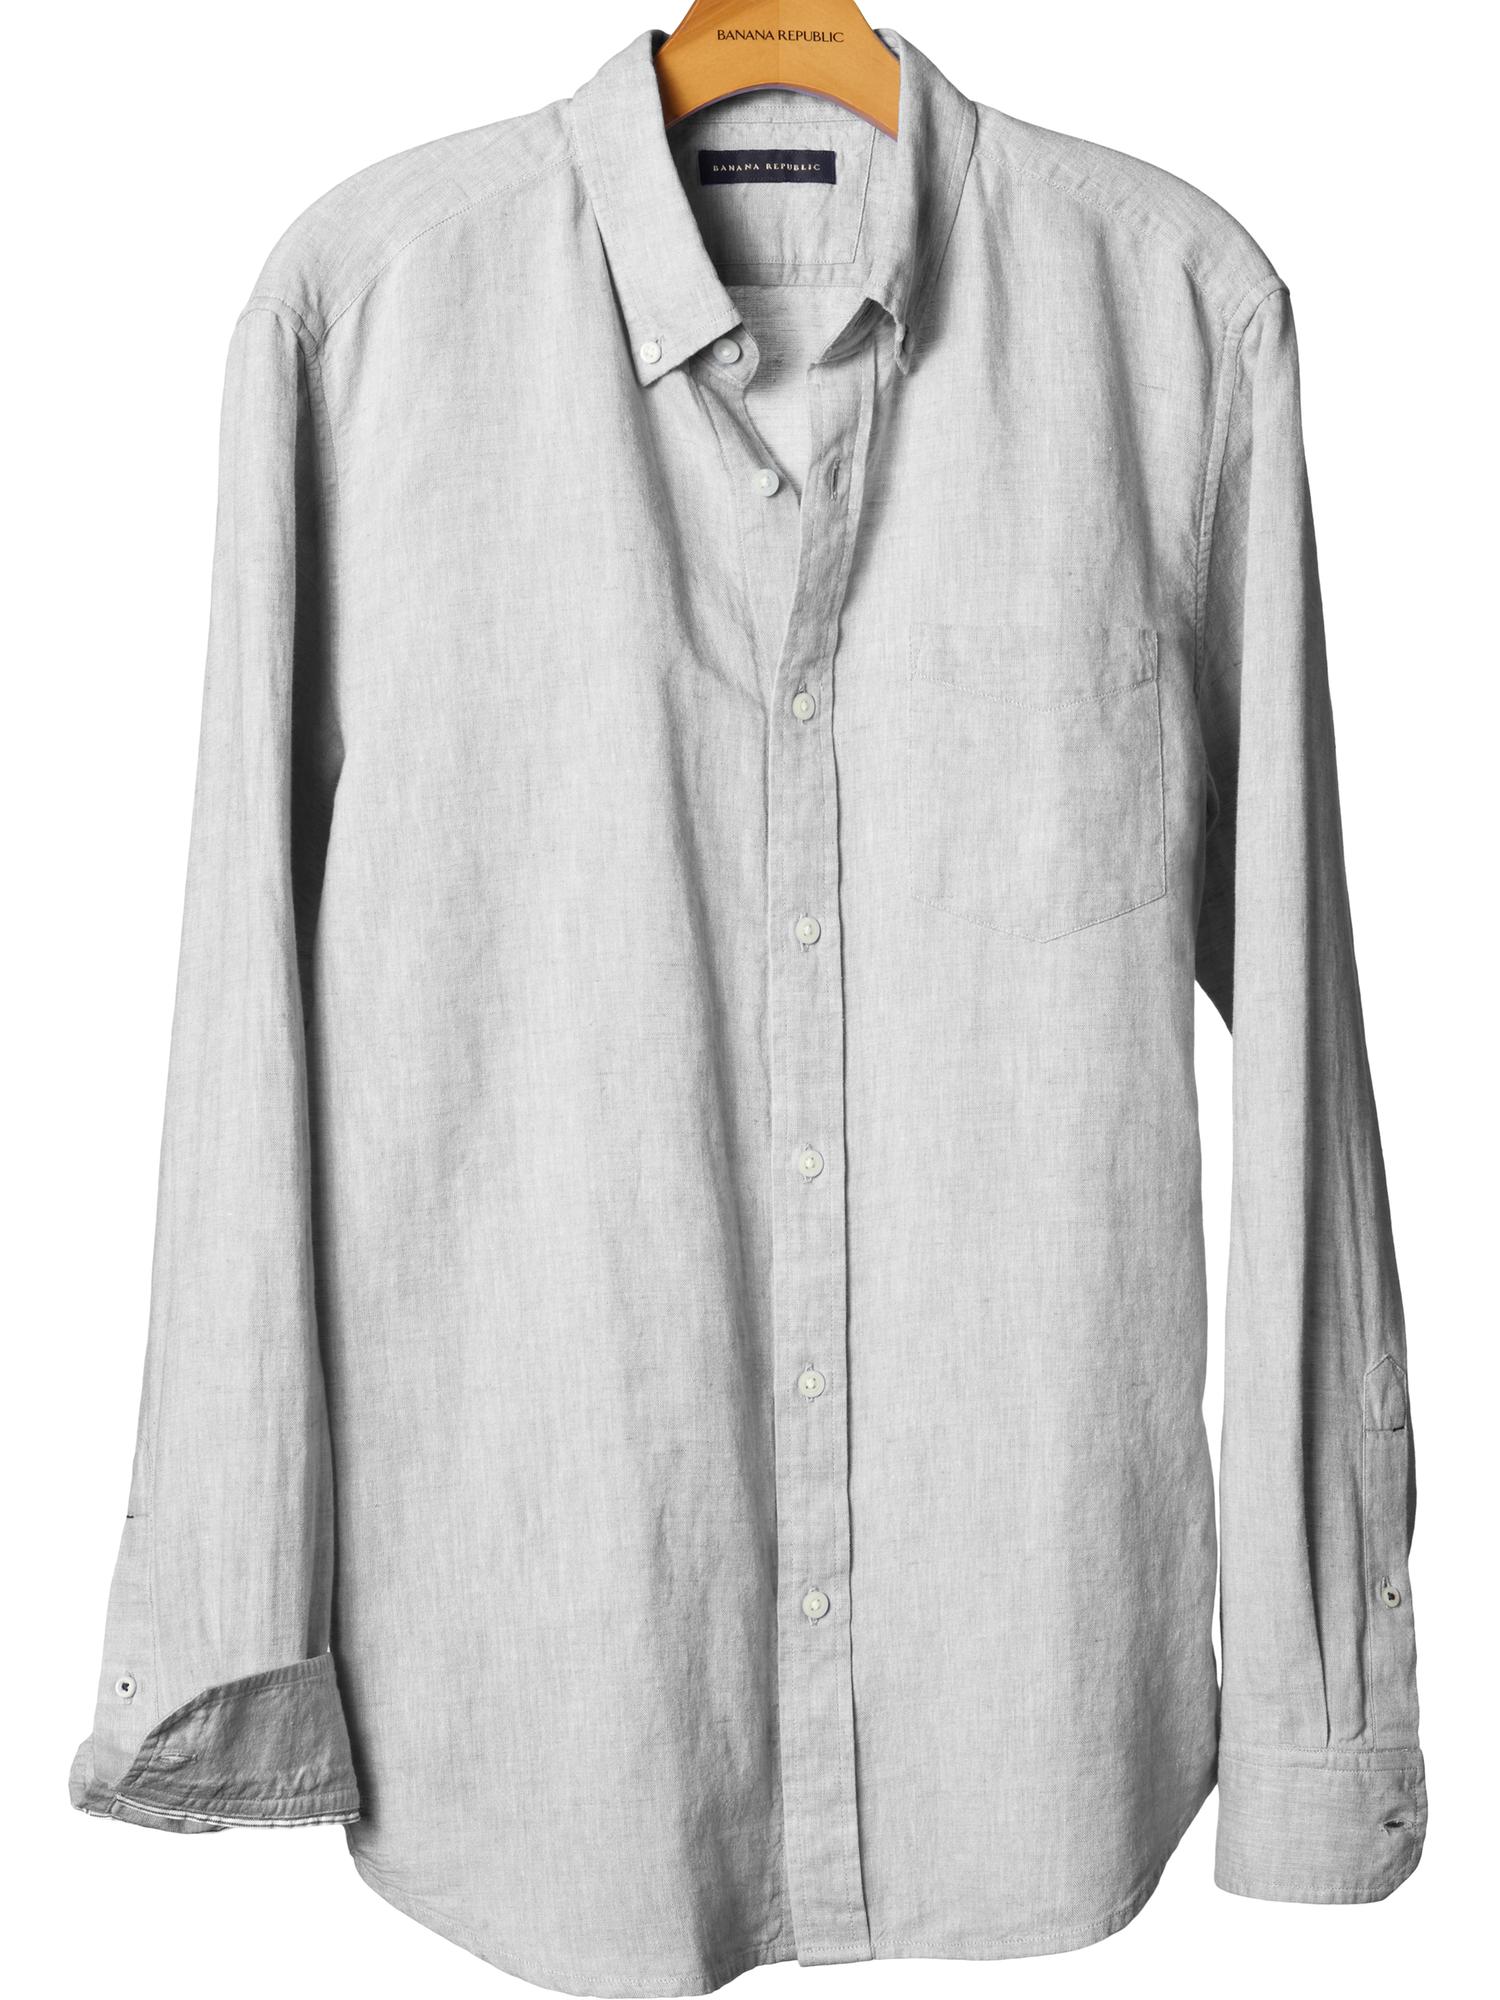 Linen/cotton button-down shirt